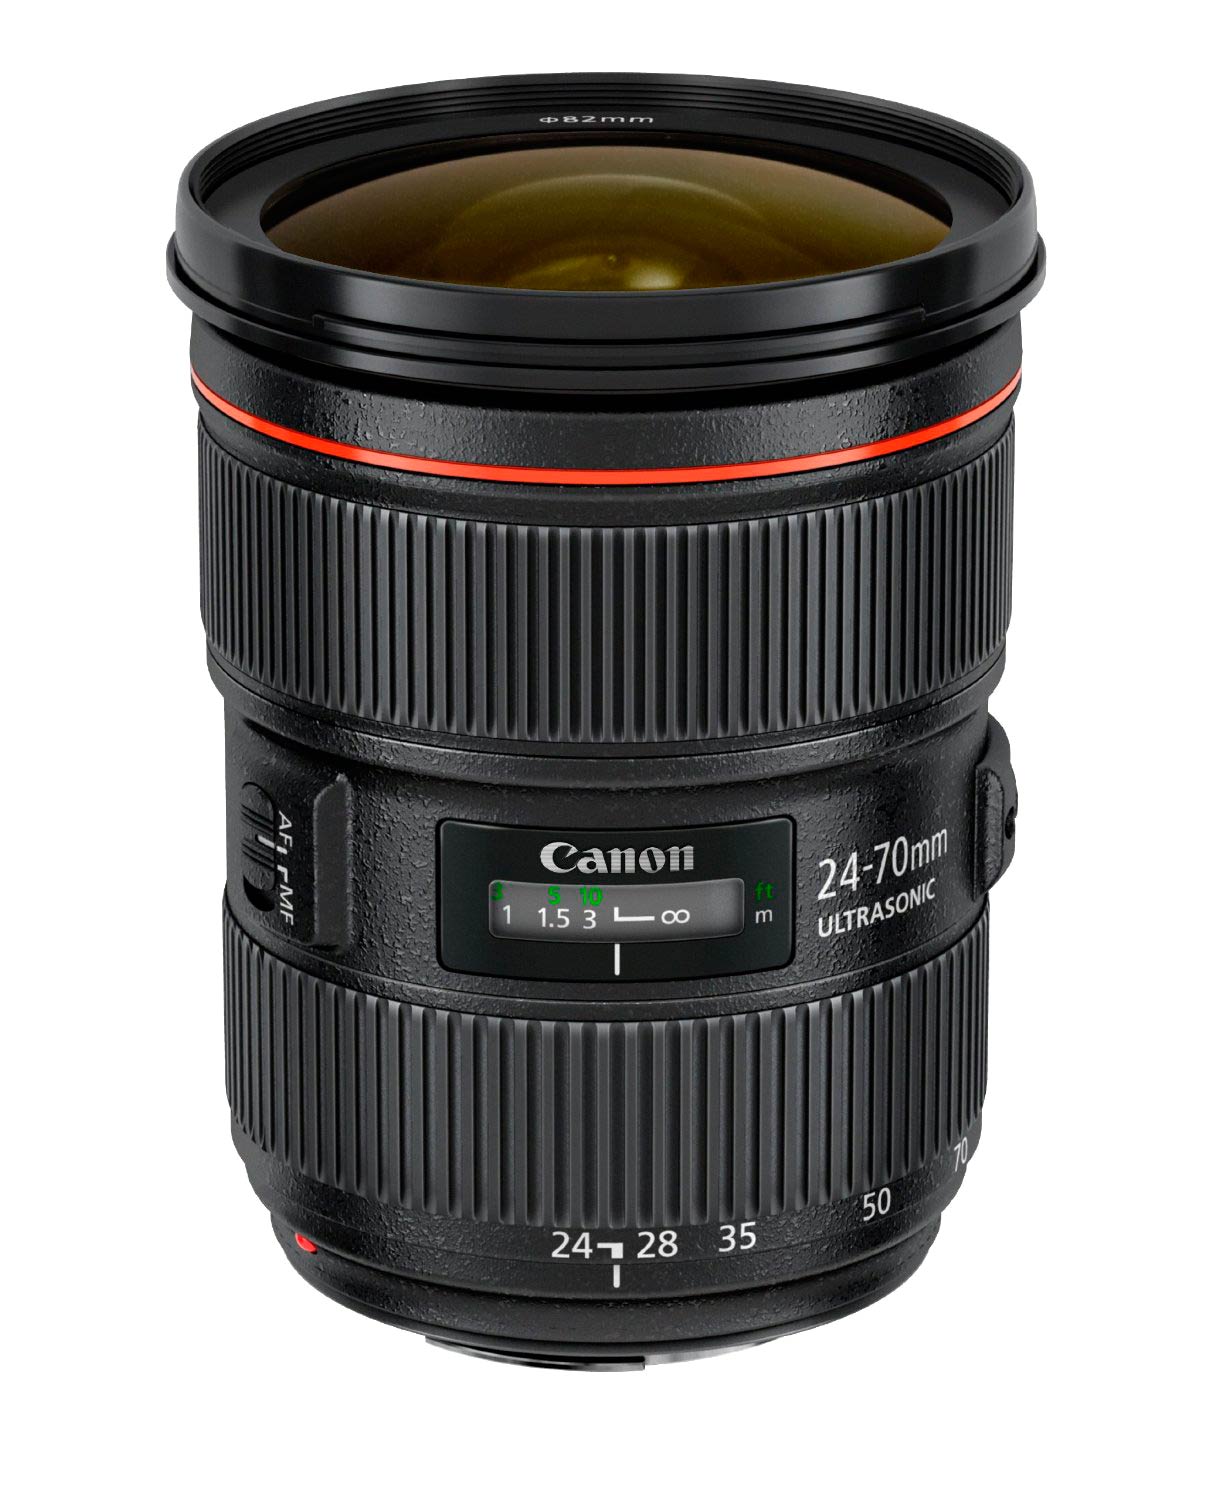 24-70 mm lens